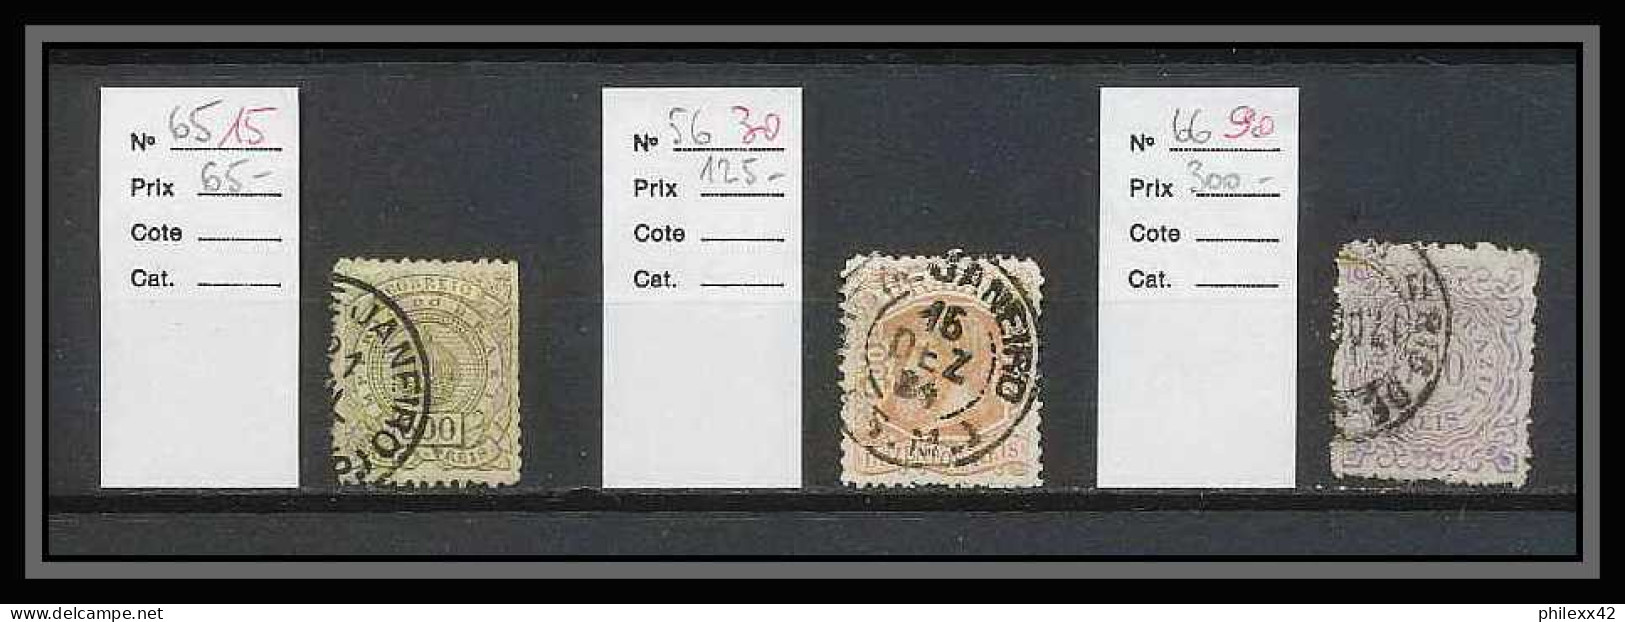 169 - Brésil (brazil) collection / Lot timbres anciens cote + de 1400 euros dont timbres signés